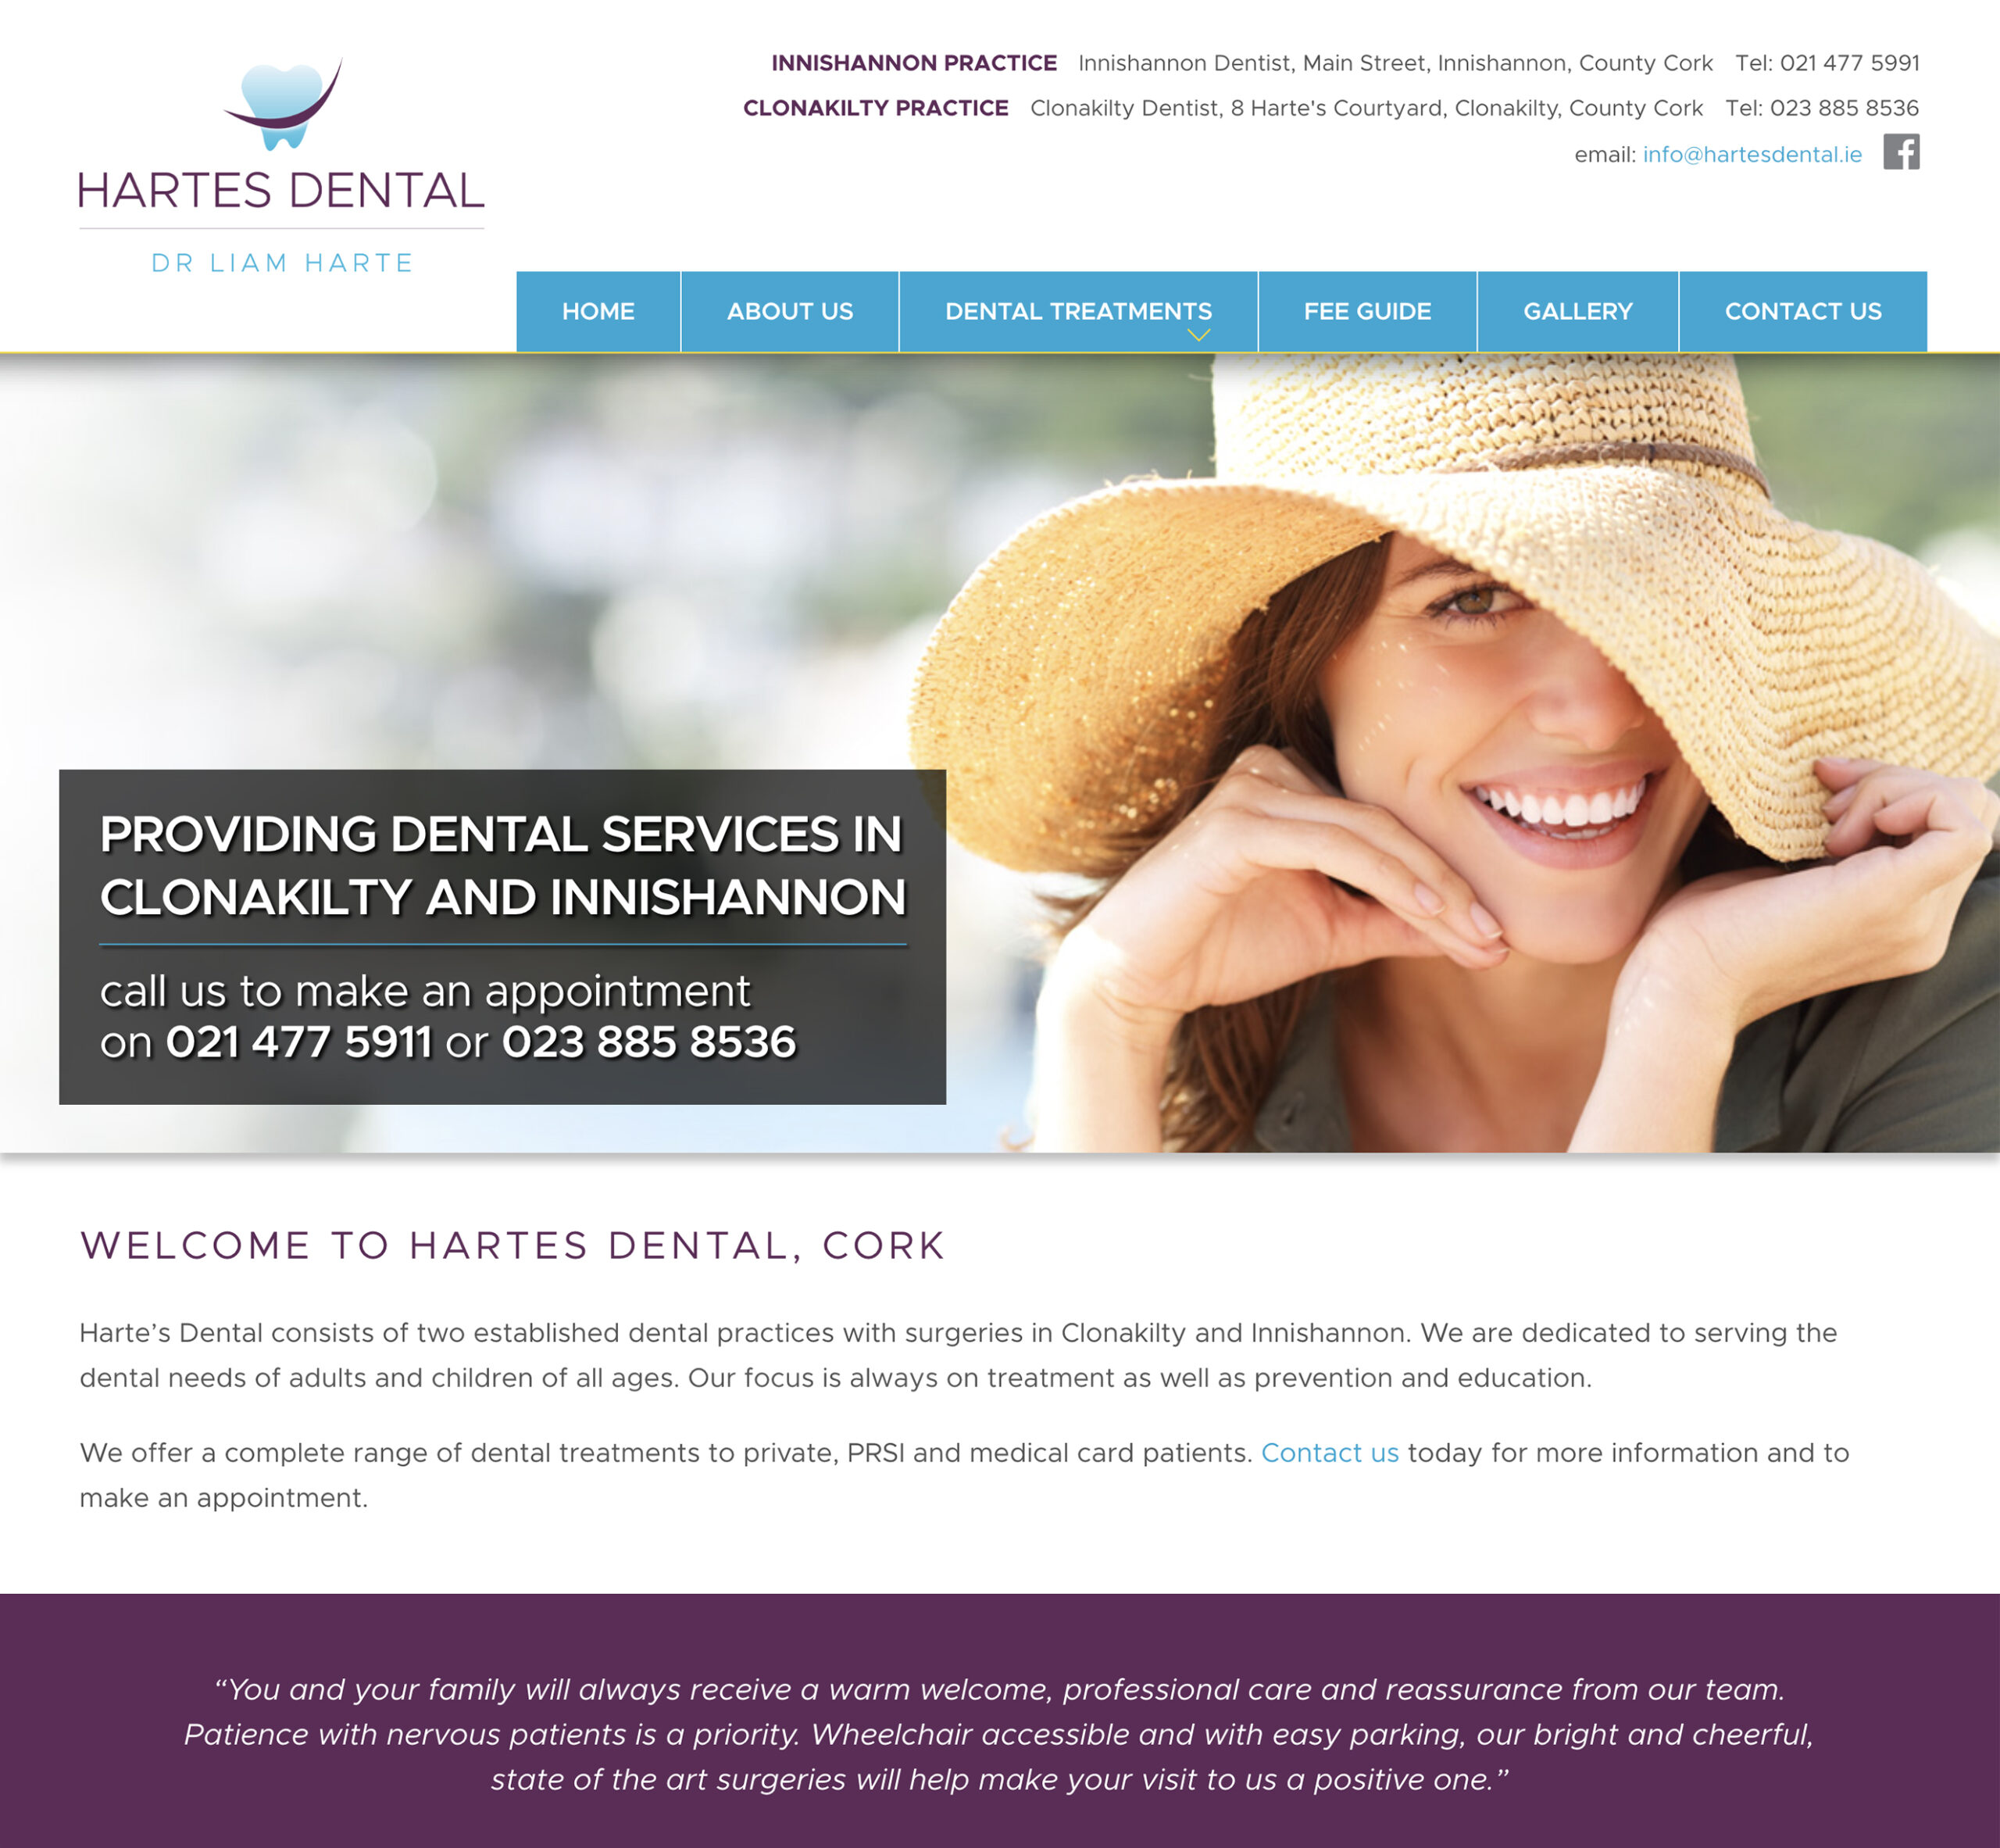 Hartes Dental - Website